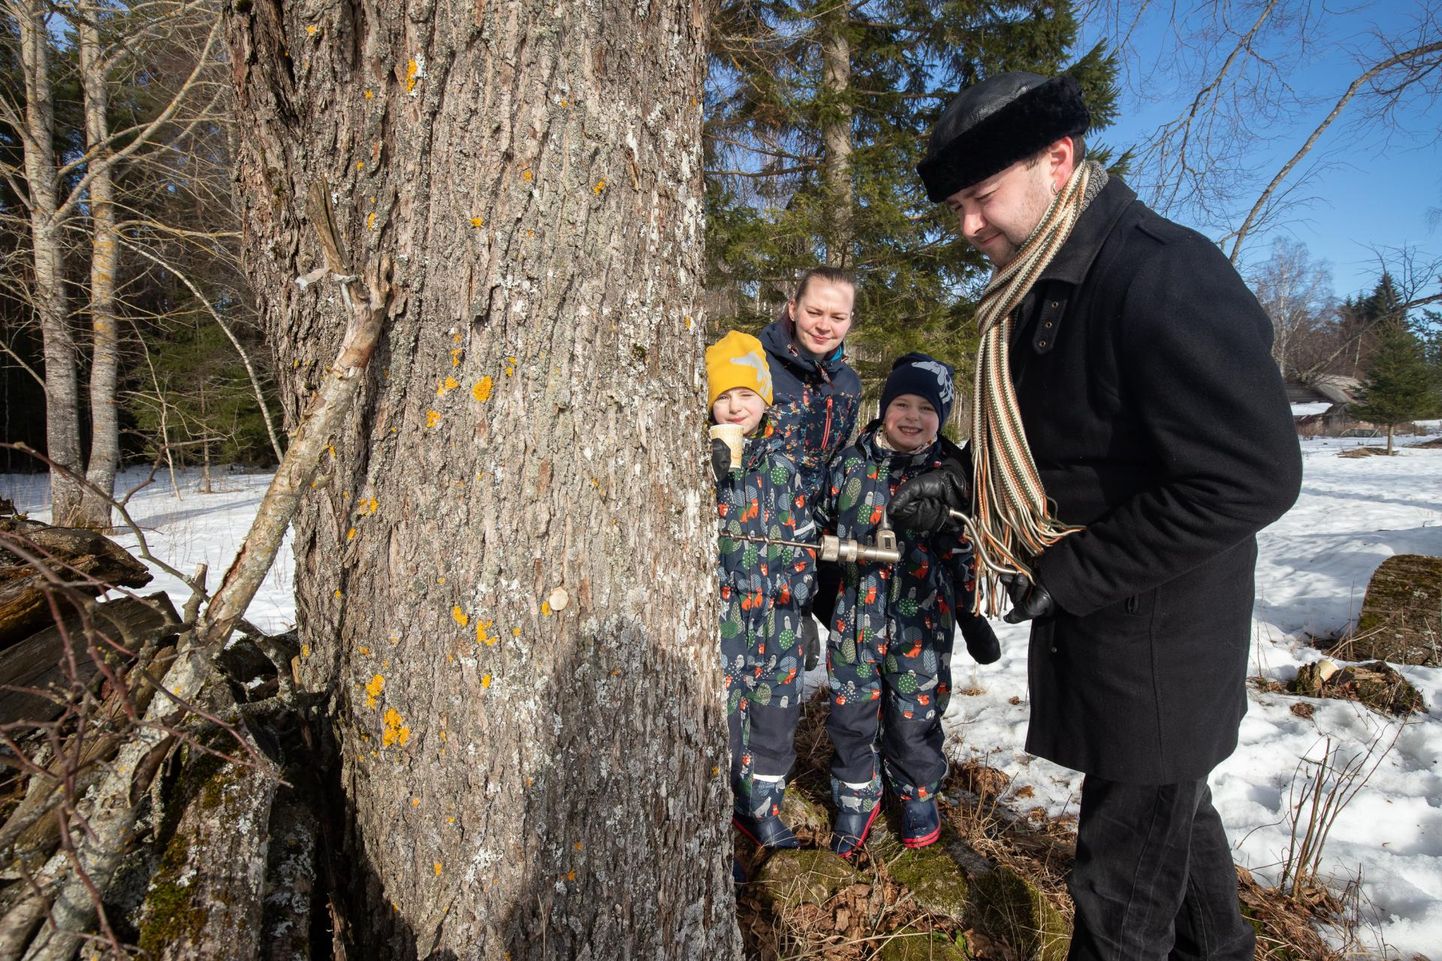 Martin Müller näitab, kuidas puust mahla saamiseks auku puurida – kaasa Anni ning kaksikud Ats-Johannes ja Juss-Martin on pealtvaatajate rollis.